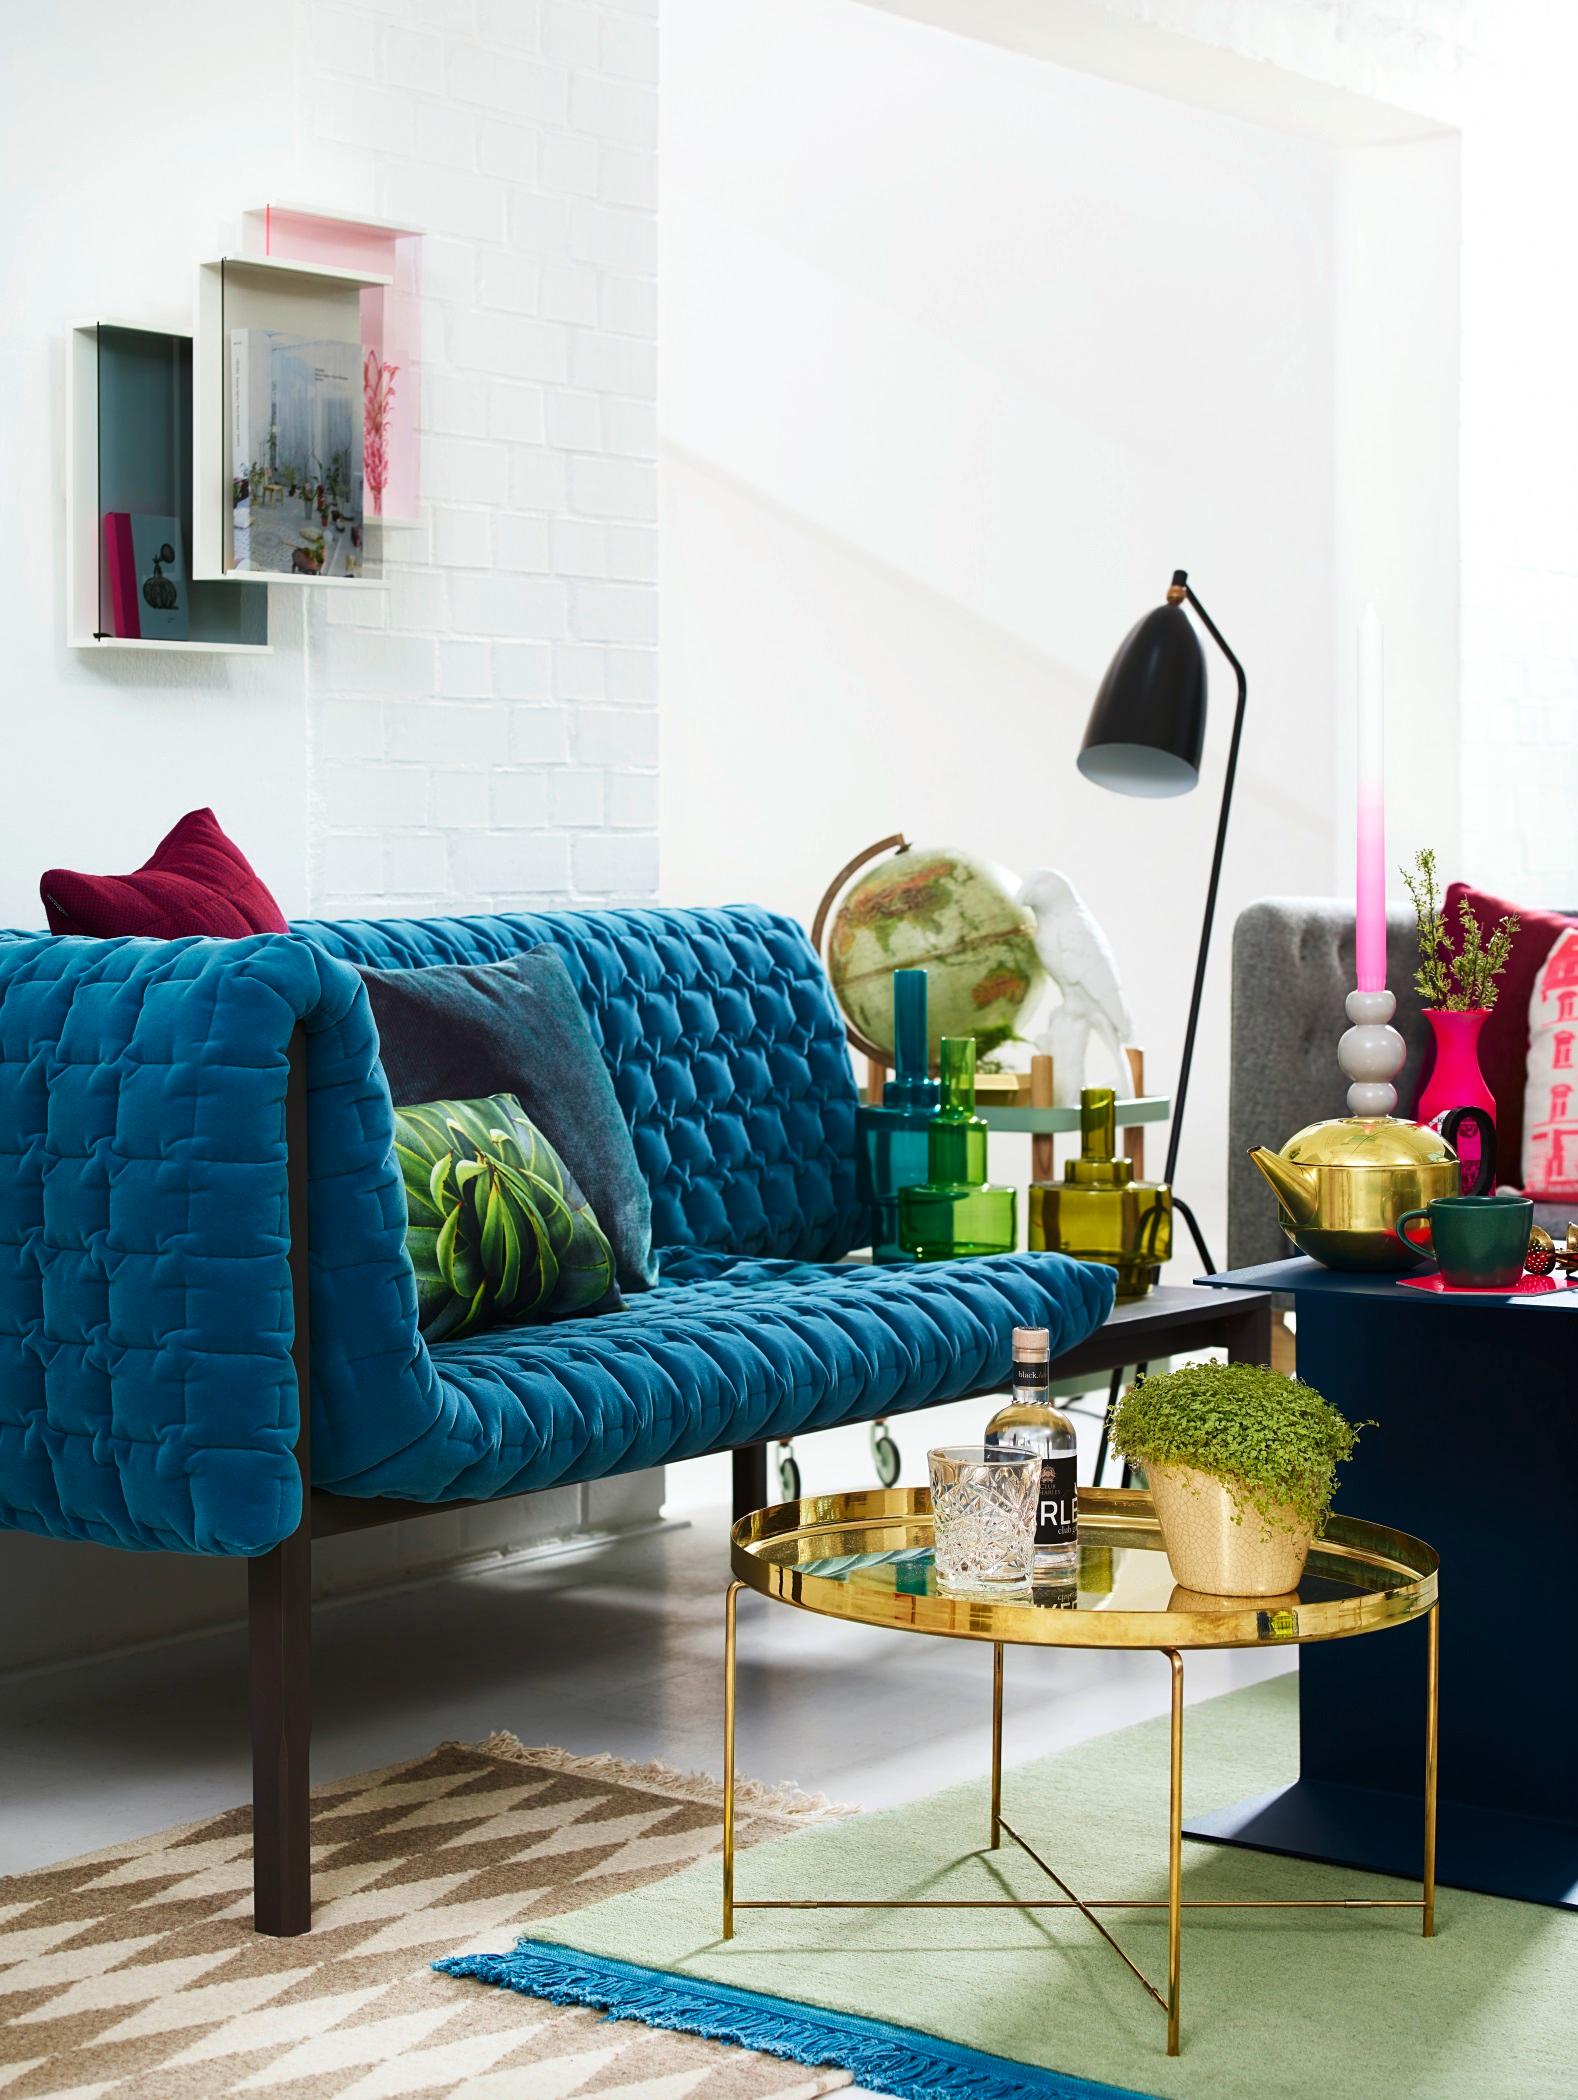 Blaues Sofa #couchtisch #eklektisch #teppich #kissen #sofa #blauessofa #globus #tisch #teekanne ©Stilwerk